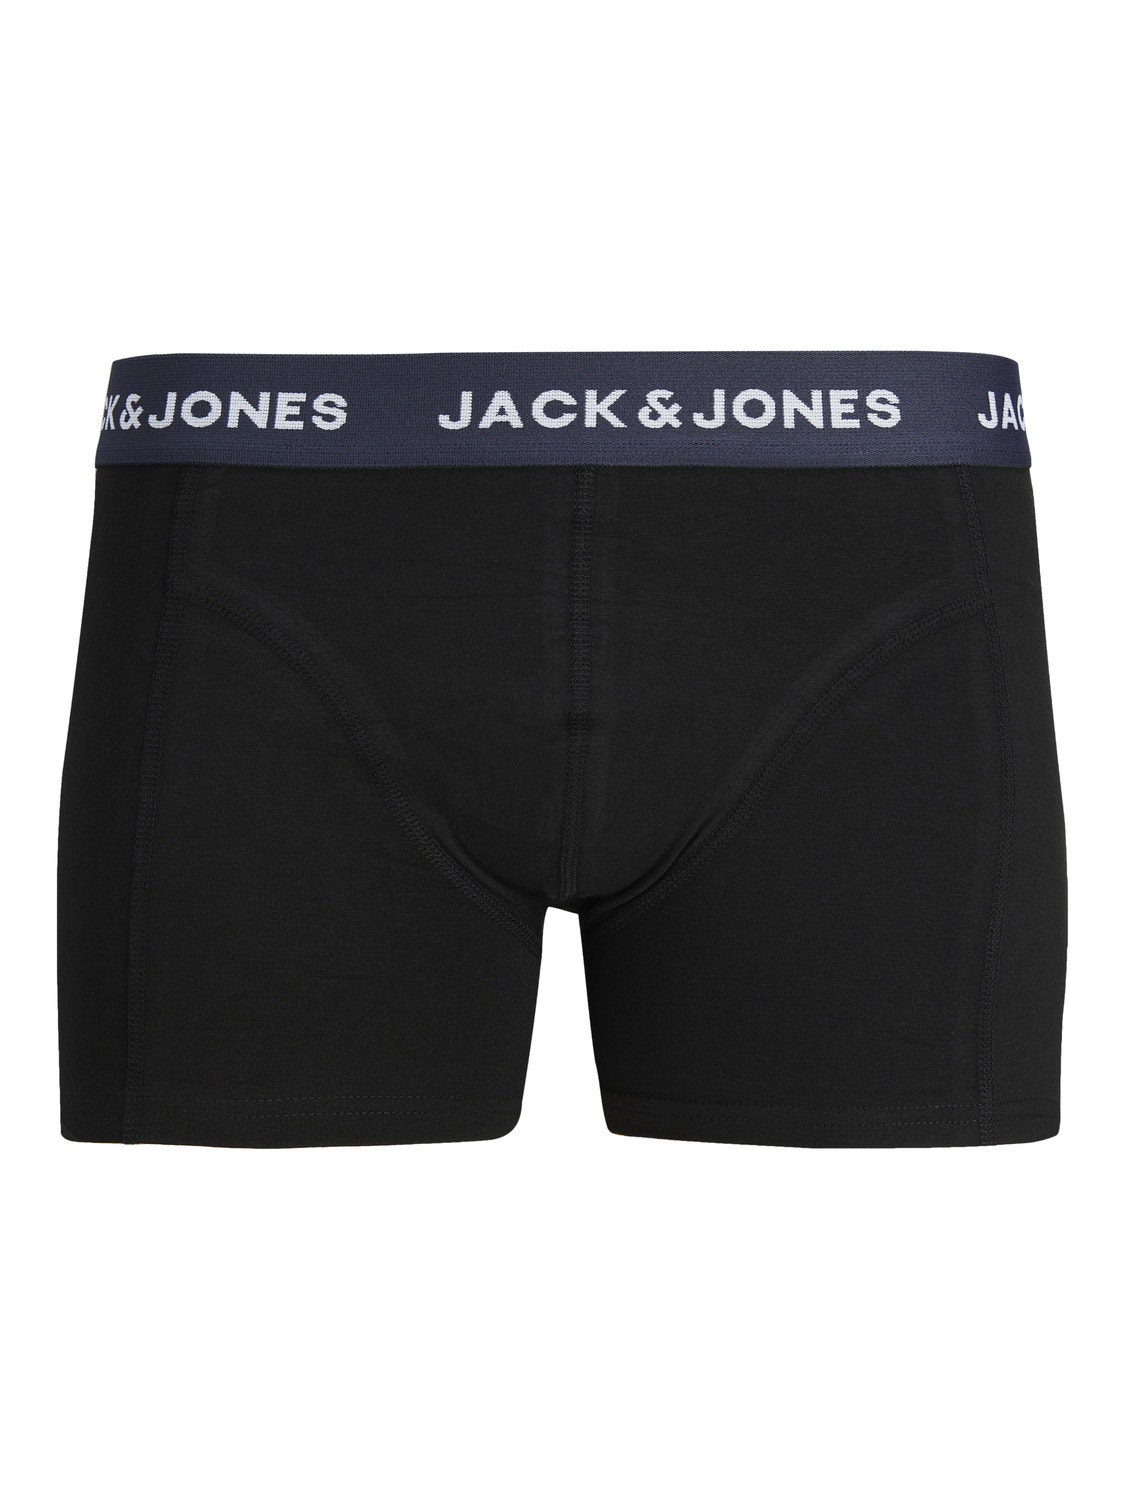 Jack & Jones 3-pack Trunks -Black - 12240256